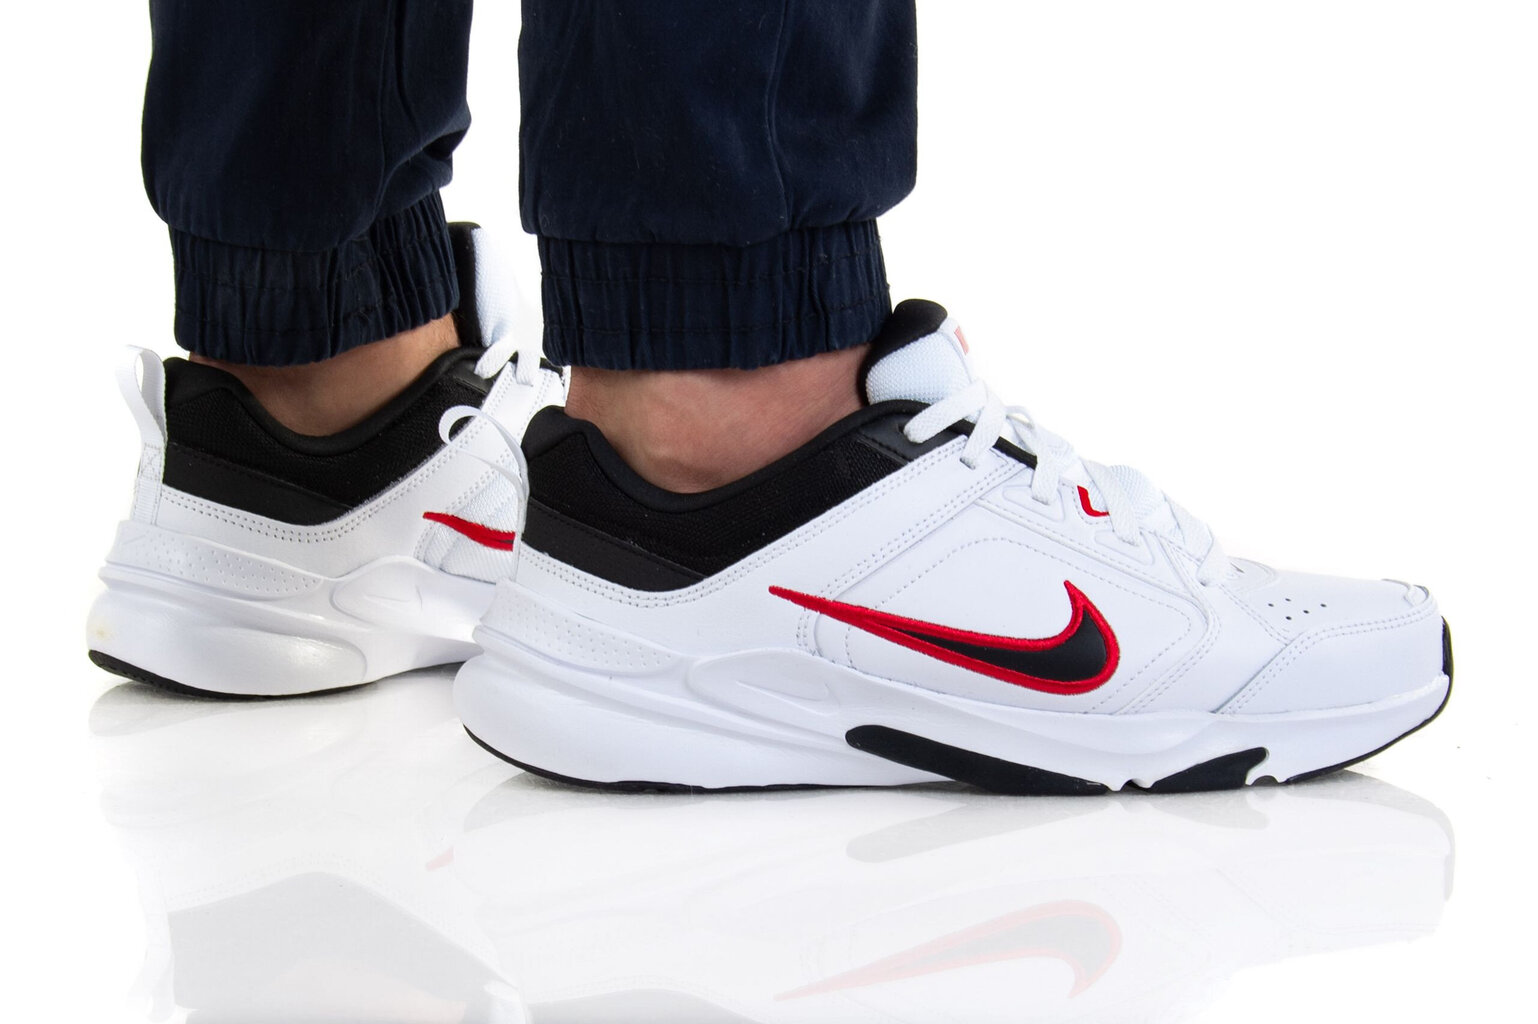 Sportiniai batai vyrams Nike Defyallday DJ1196101 kaina ir informacija | Kedai vyrams | pigu.lt